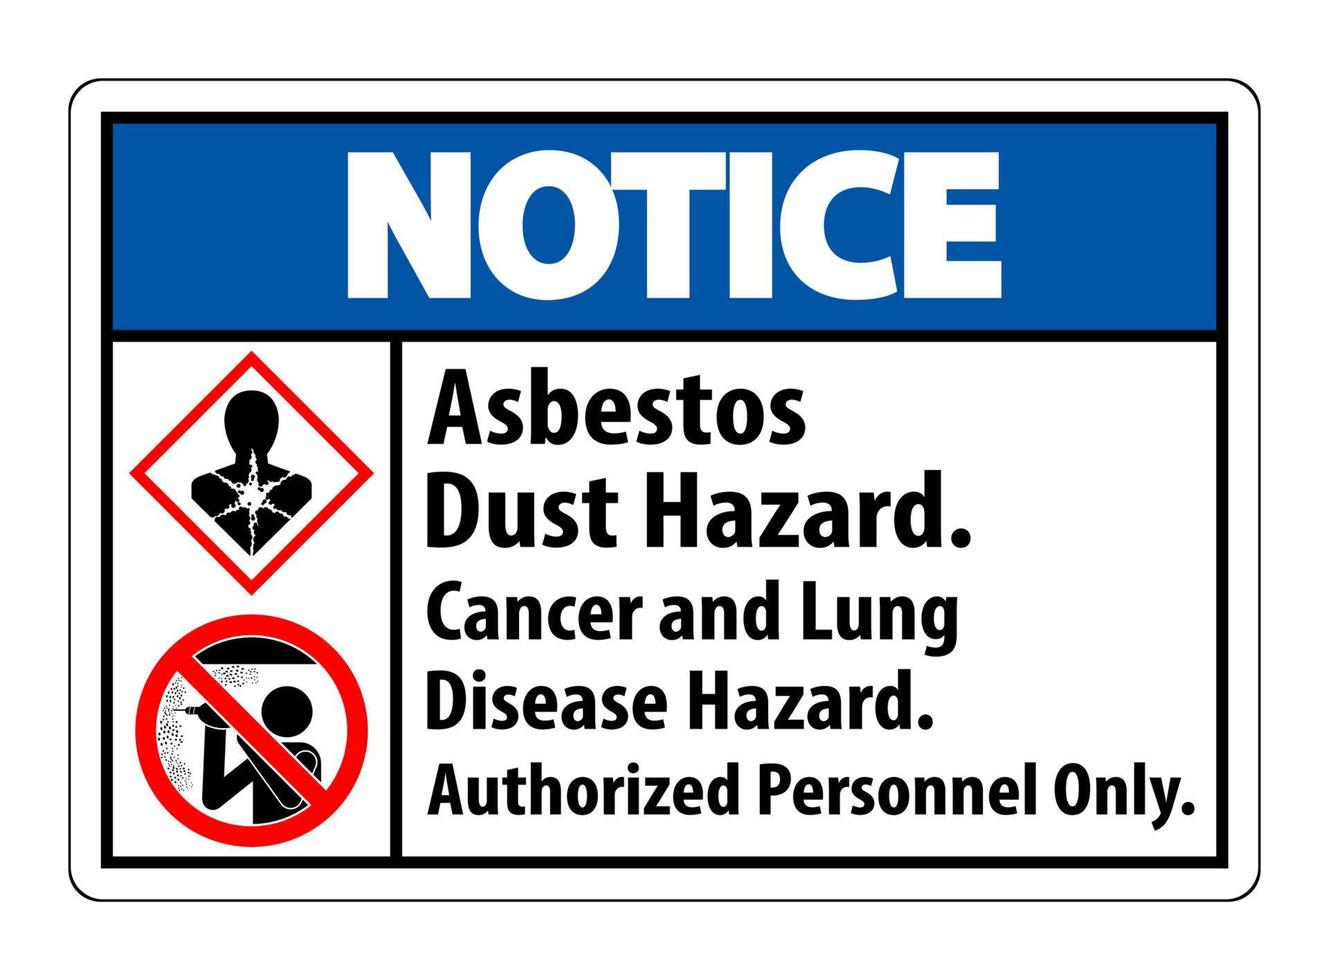 aviso etiqueta de seguridad, peligro de polvo de asbesto, riesgo de cáncer y enfermedad pulmonar solo personal autorizado vector